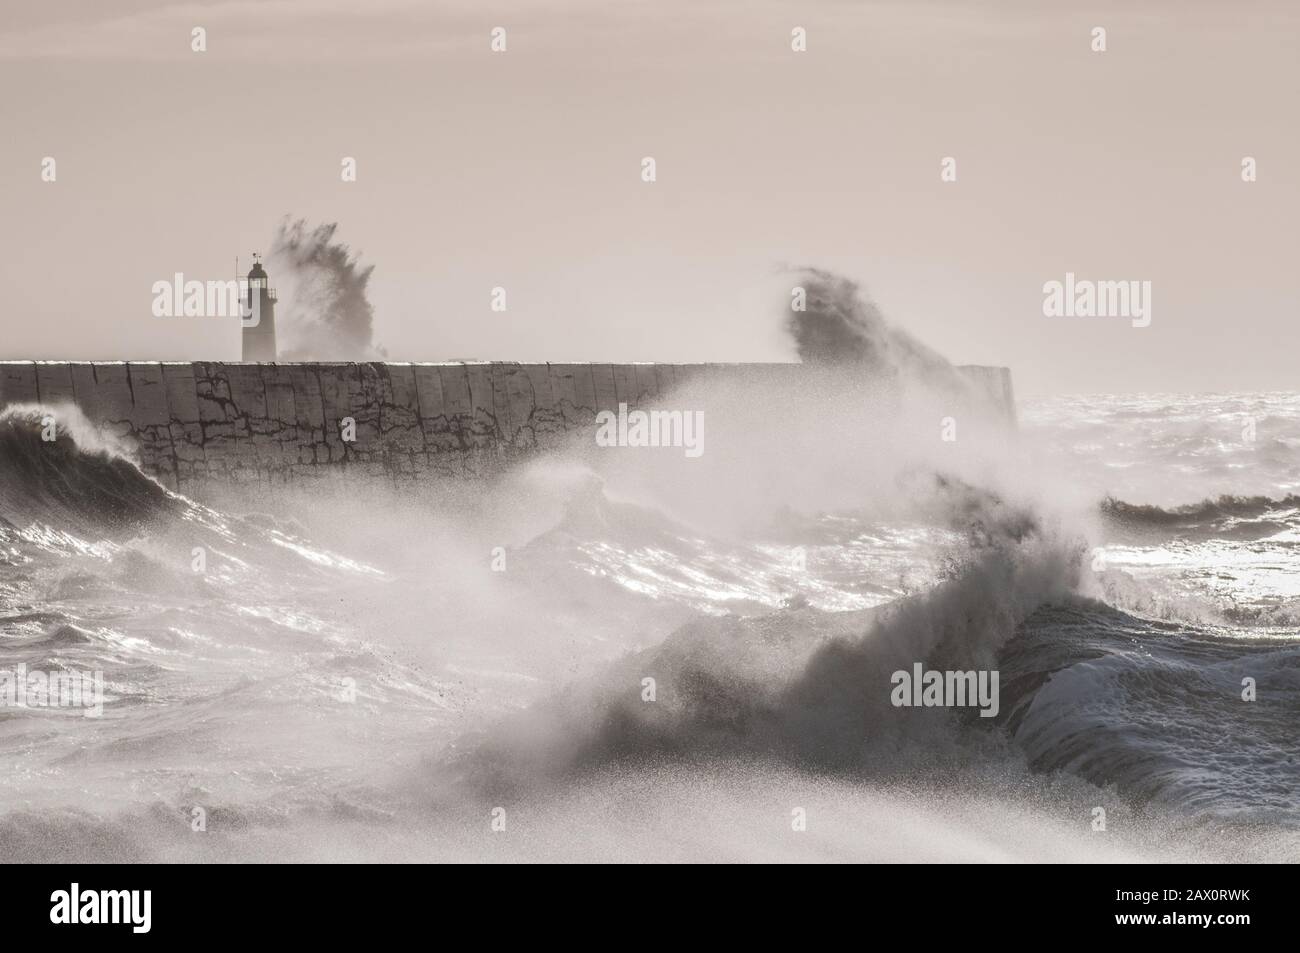 Newhaven, East Sussex, Großbritannien. Februar 2020. Ein hellerer Tag an der Südküste sieht spektakulärere Szenen. Sturmflut & Flut im zuge des Sturms Ciara mit wieder stärkender Windpeitsche das Meer hoch. Nicht ganz die Massen von gestern, aber viele Fotografen und Zuschauer sind anwesend. Credit: David Burr/Alamy Live News Stockfoto